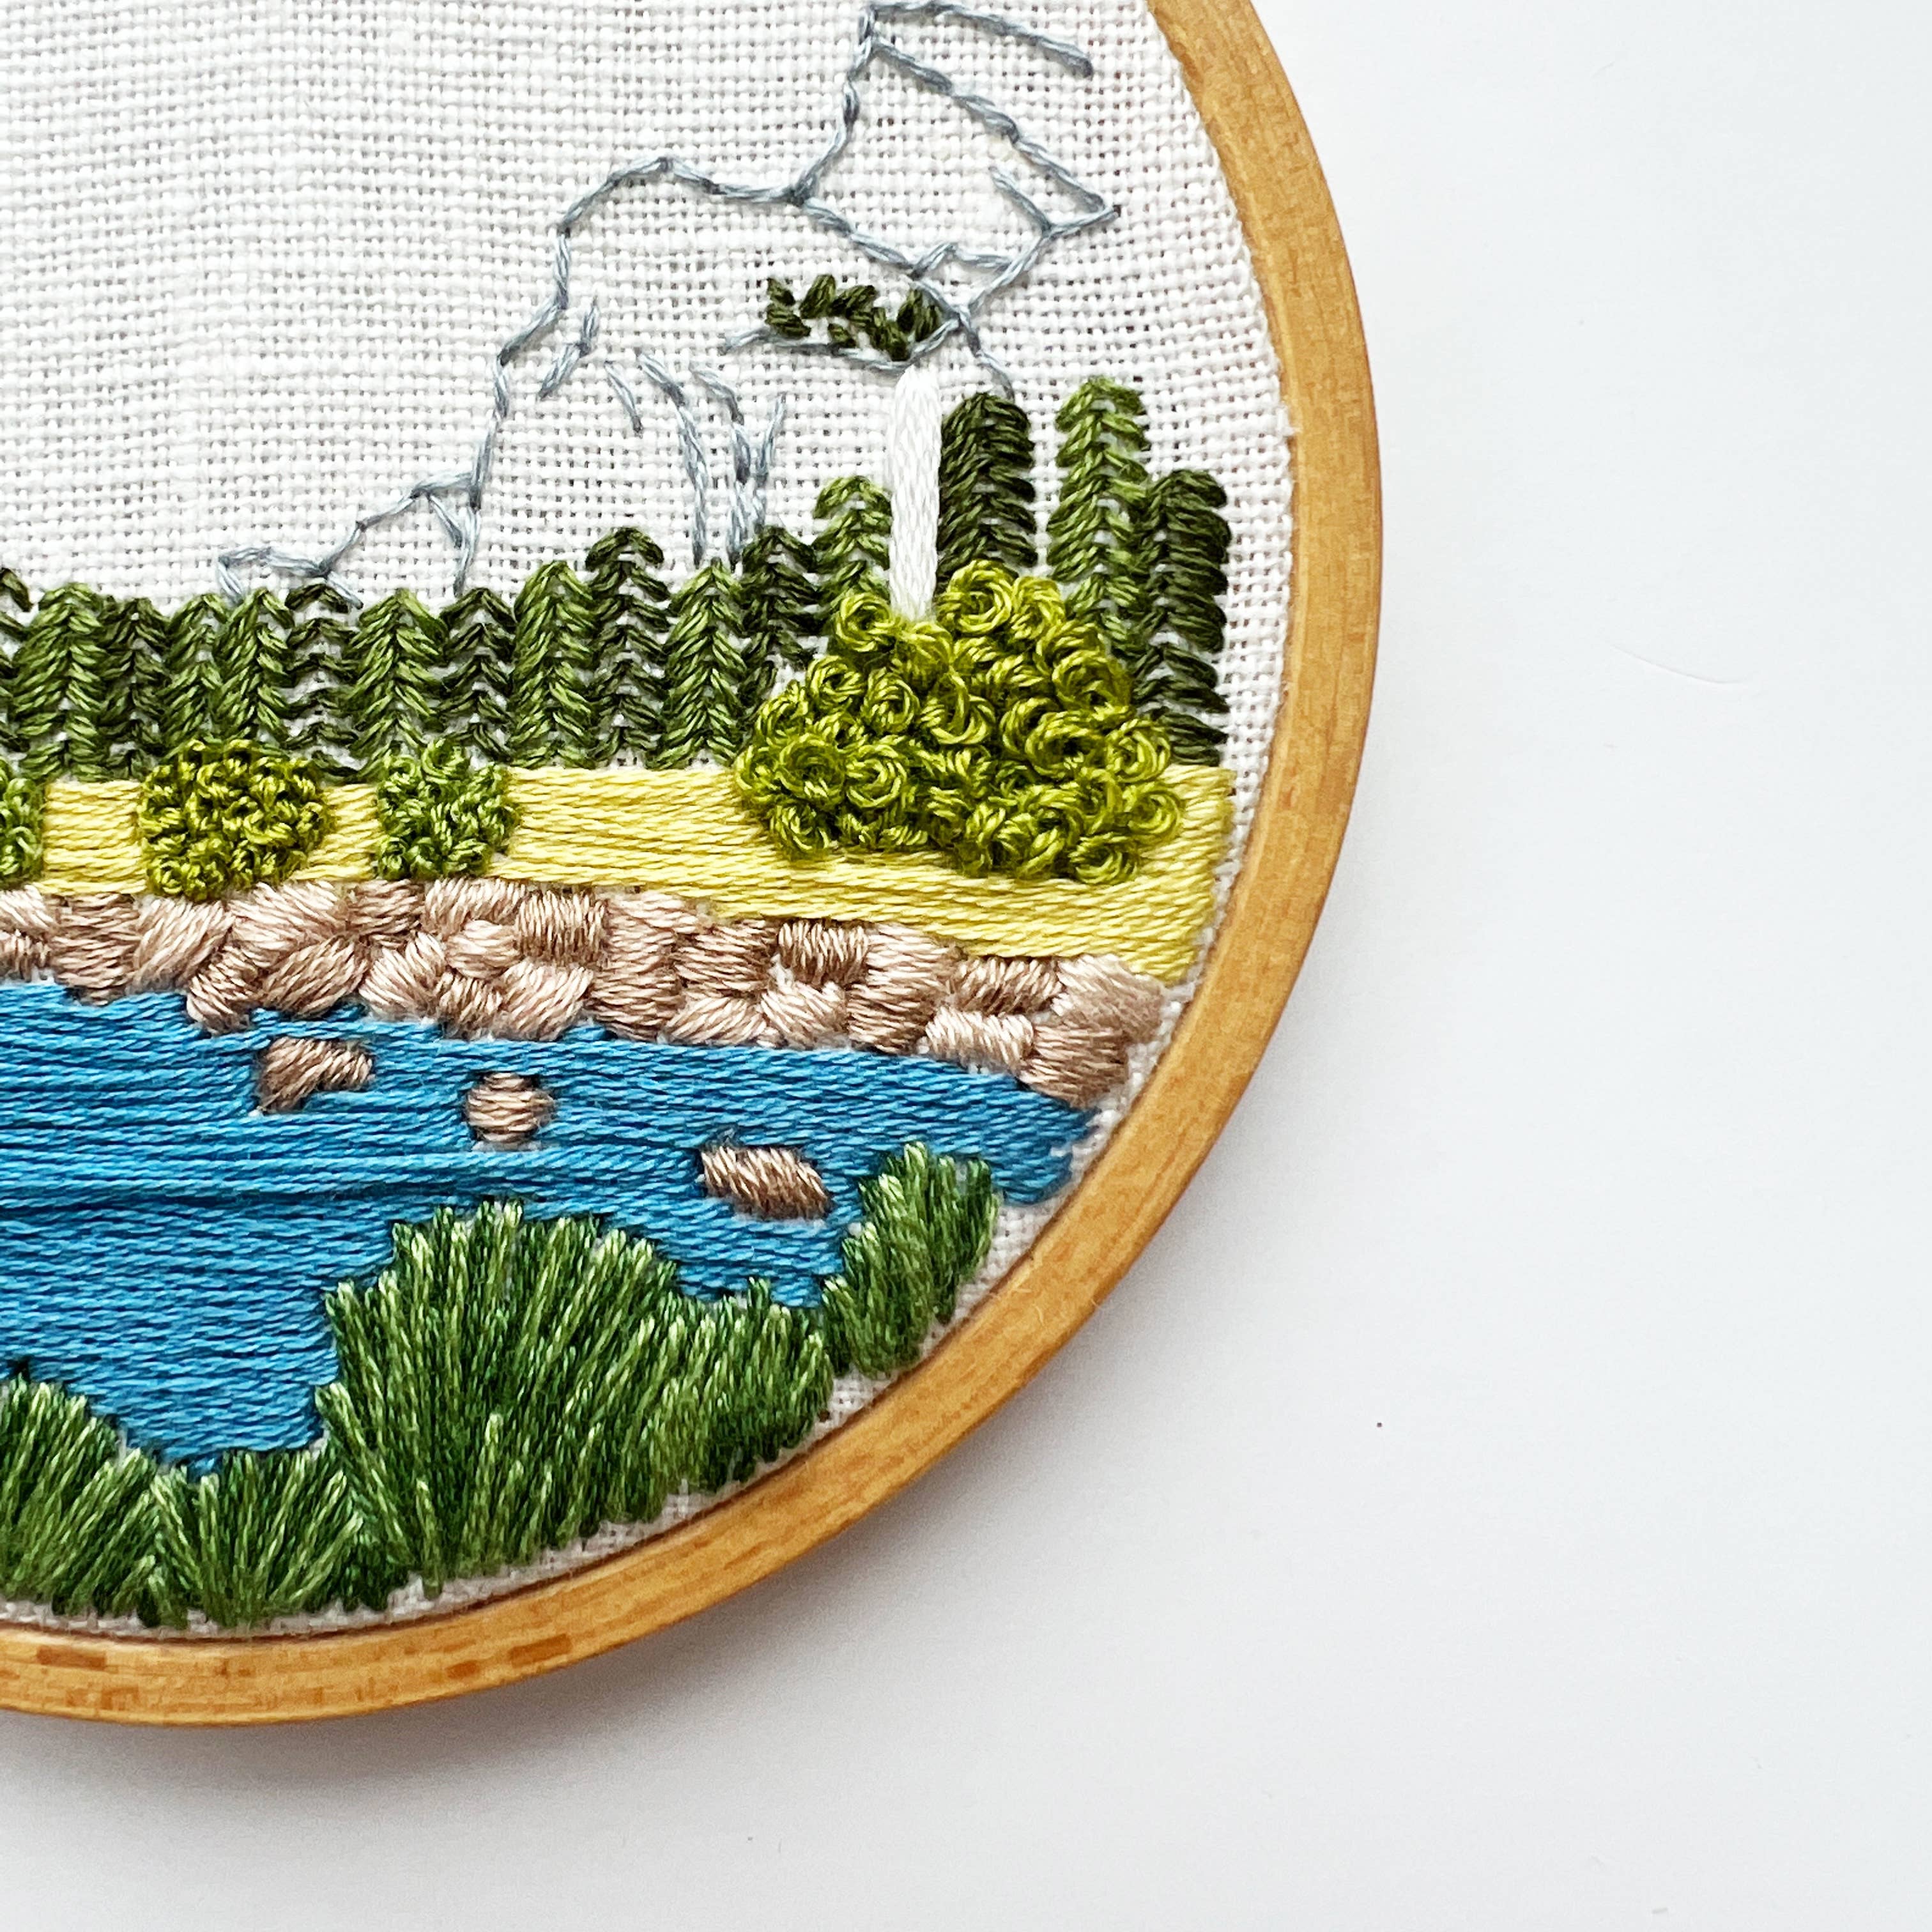 Yosemite embroidery kit